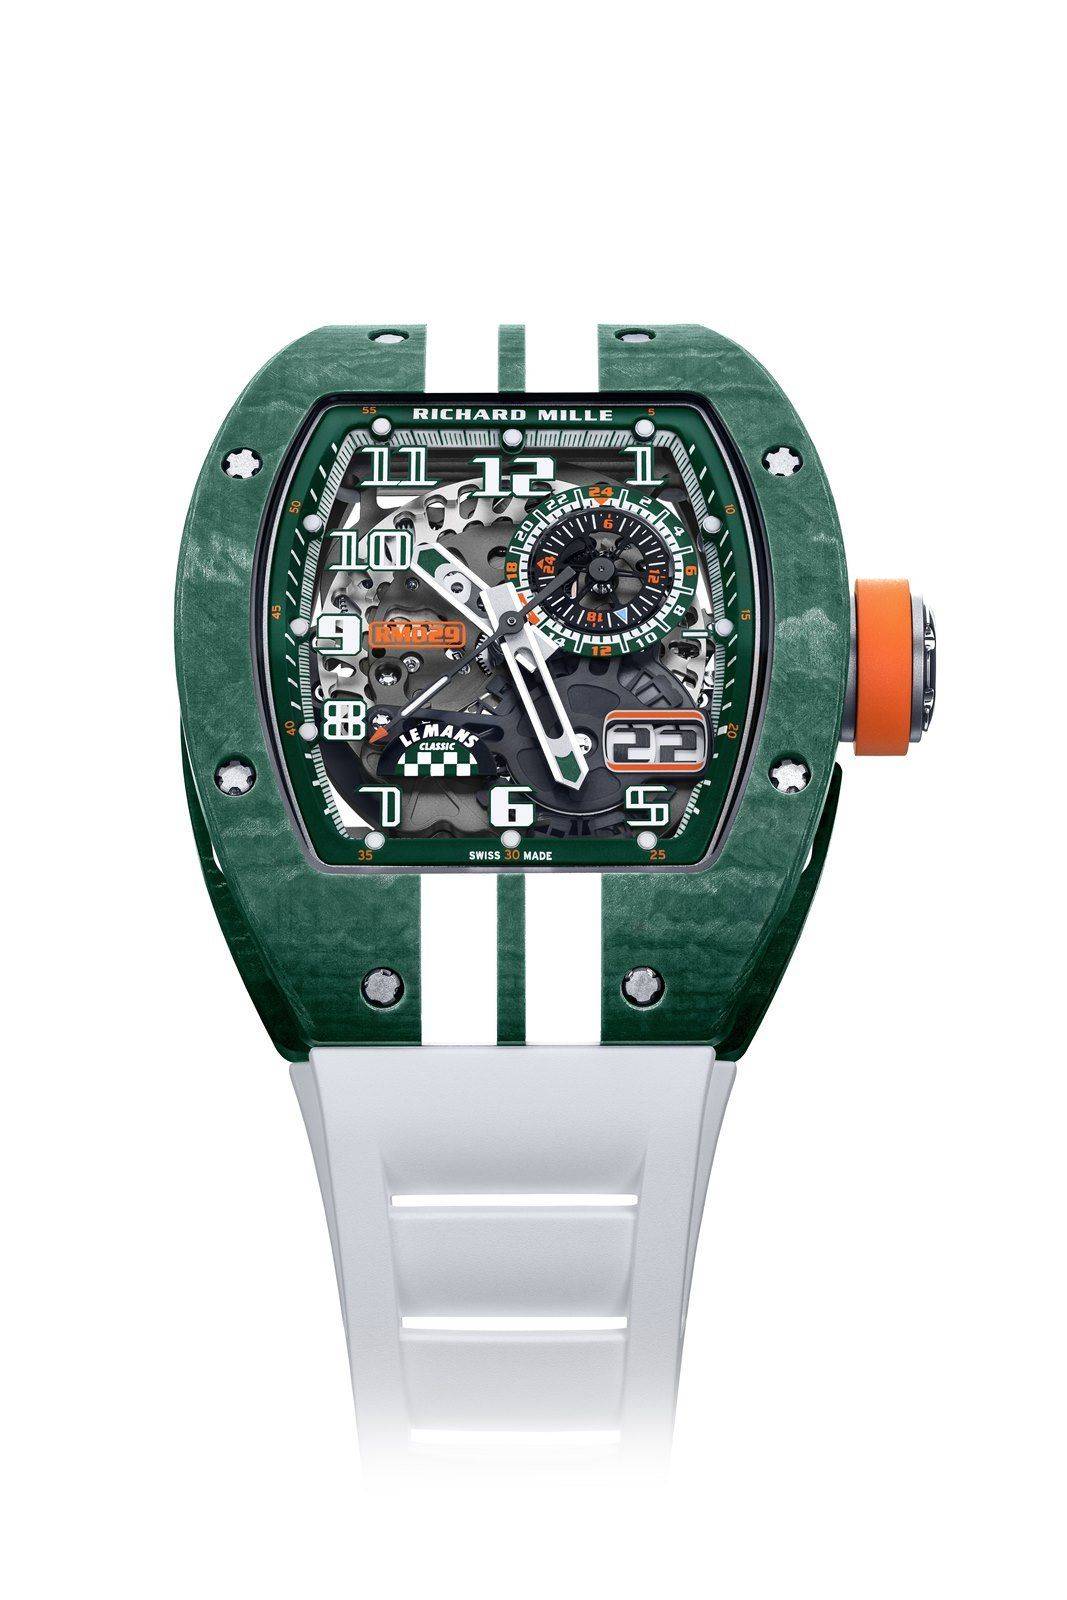 Richard Mille RM 029 Le Mans Classic Relojes Especiales, EL de relojes